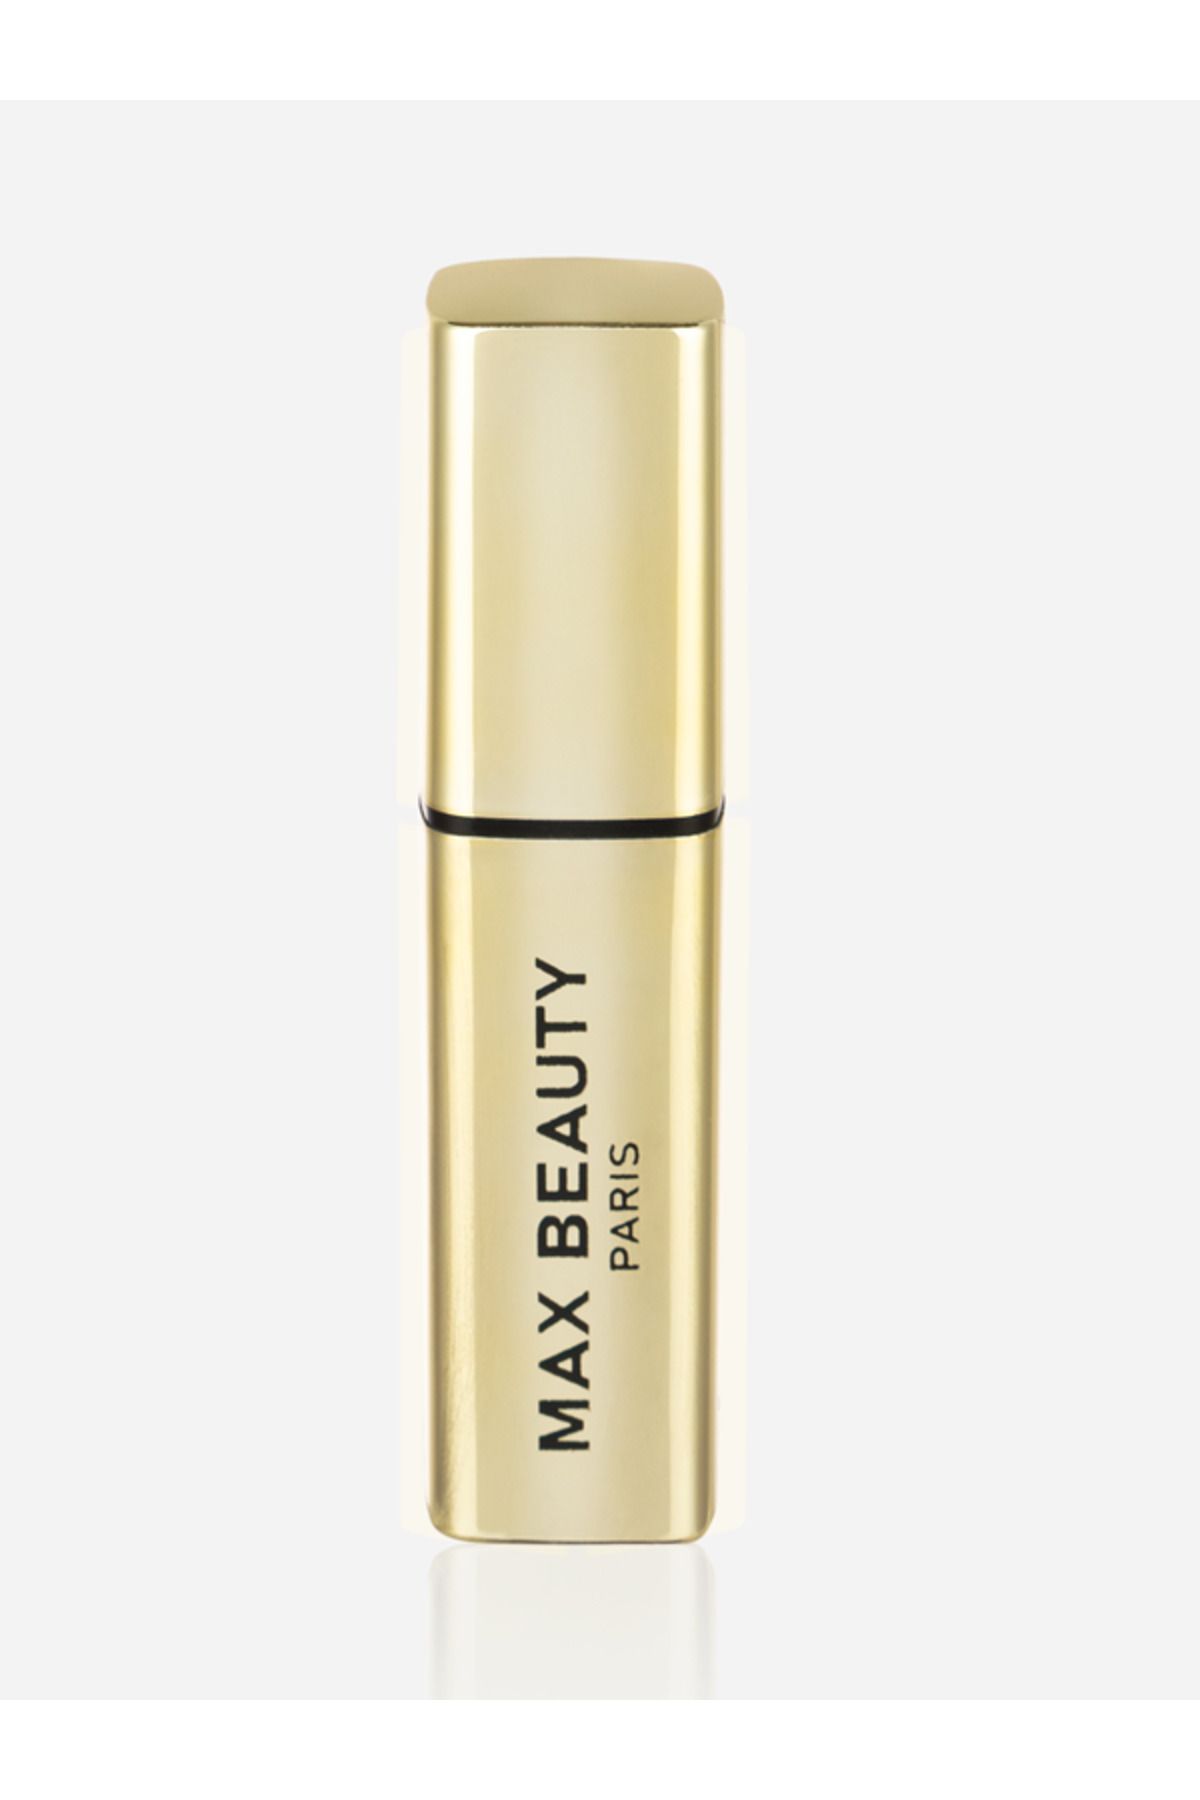 max beauty paris Taşınabilir Doldurulabilir Seyahat Boy Lüx Boş Parfüm Şişesi 8 ML Gold Renk